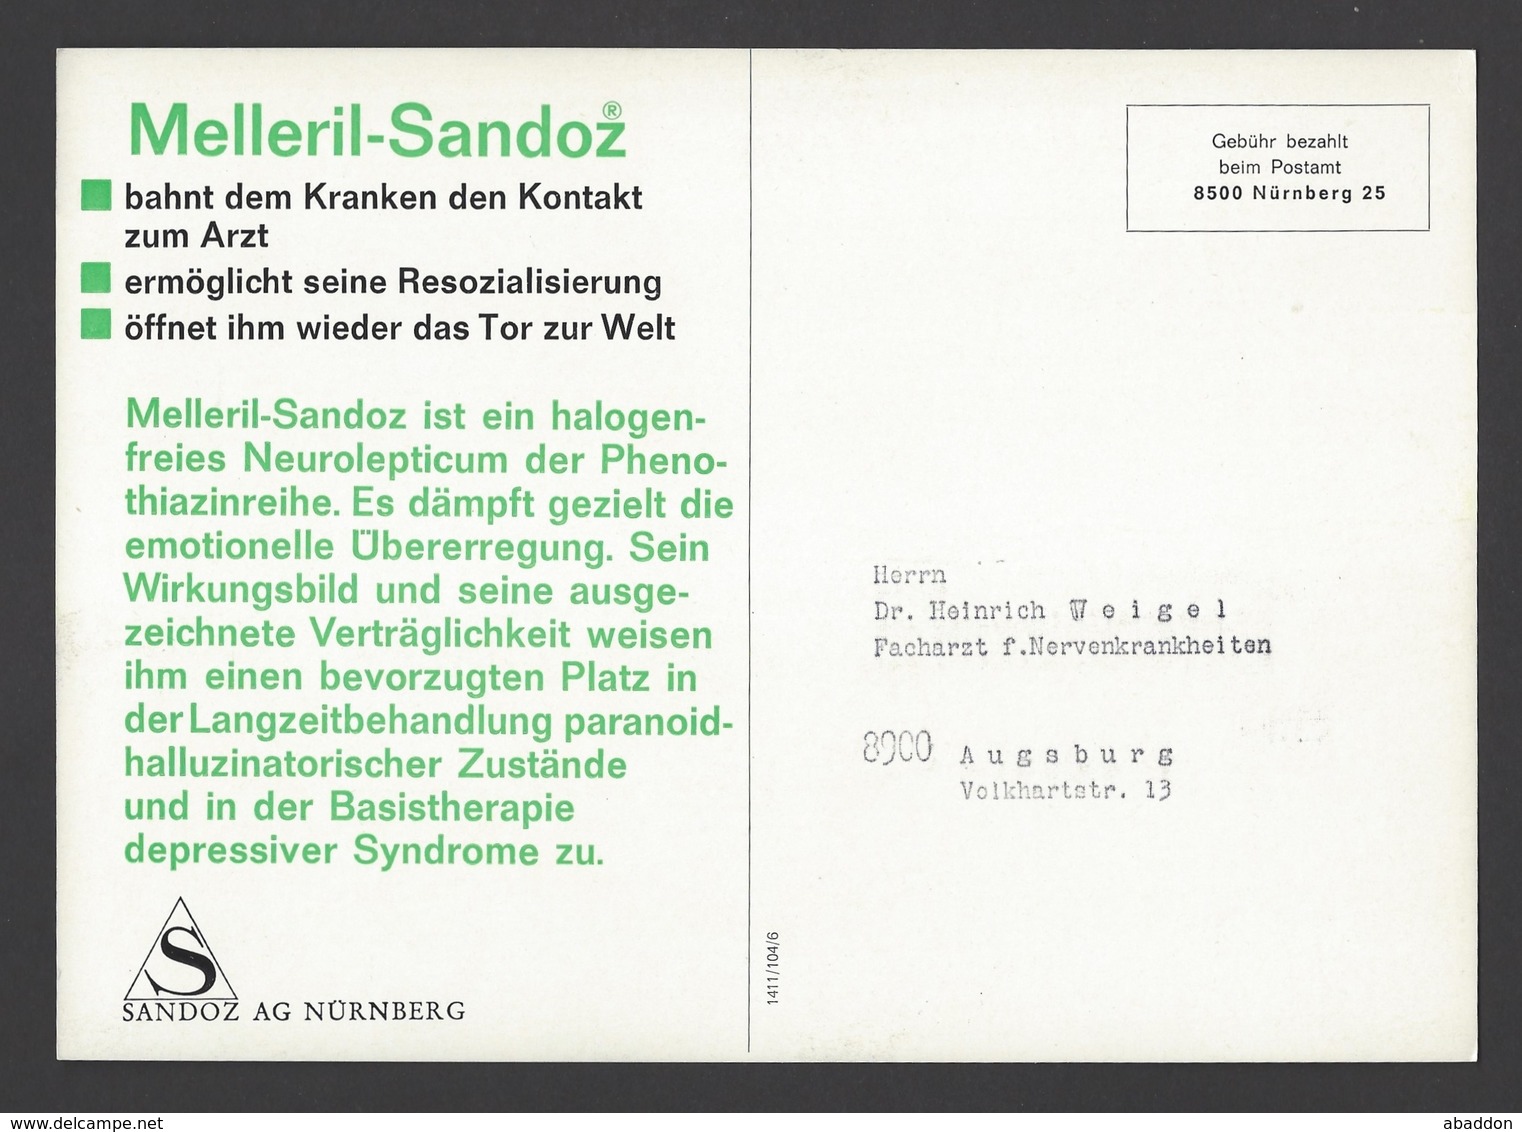 BRD - Gebühr Bezahlt Beim Postamt Nürnberg Auf Großkarte Sandoz AG - Melleril-Sandoz Ca. Um 1960 - Pharmazie